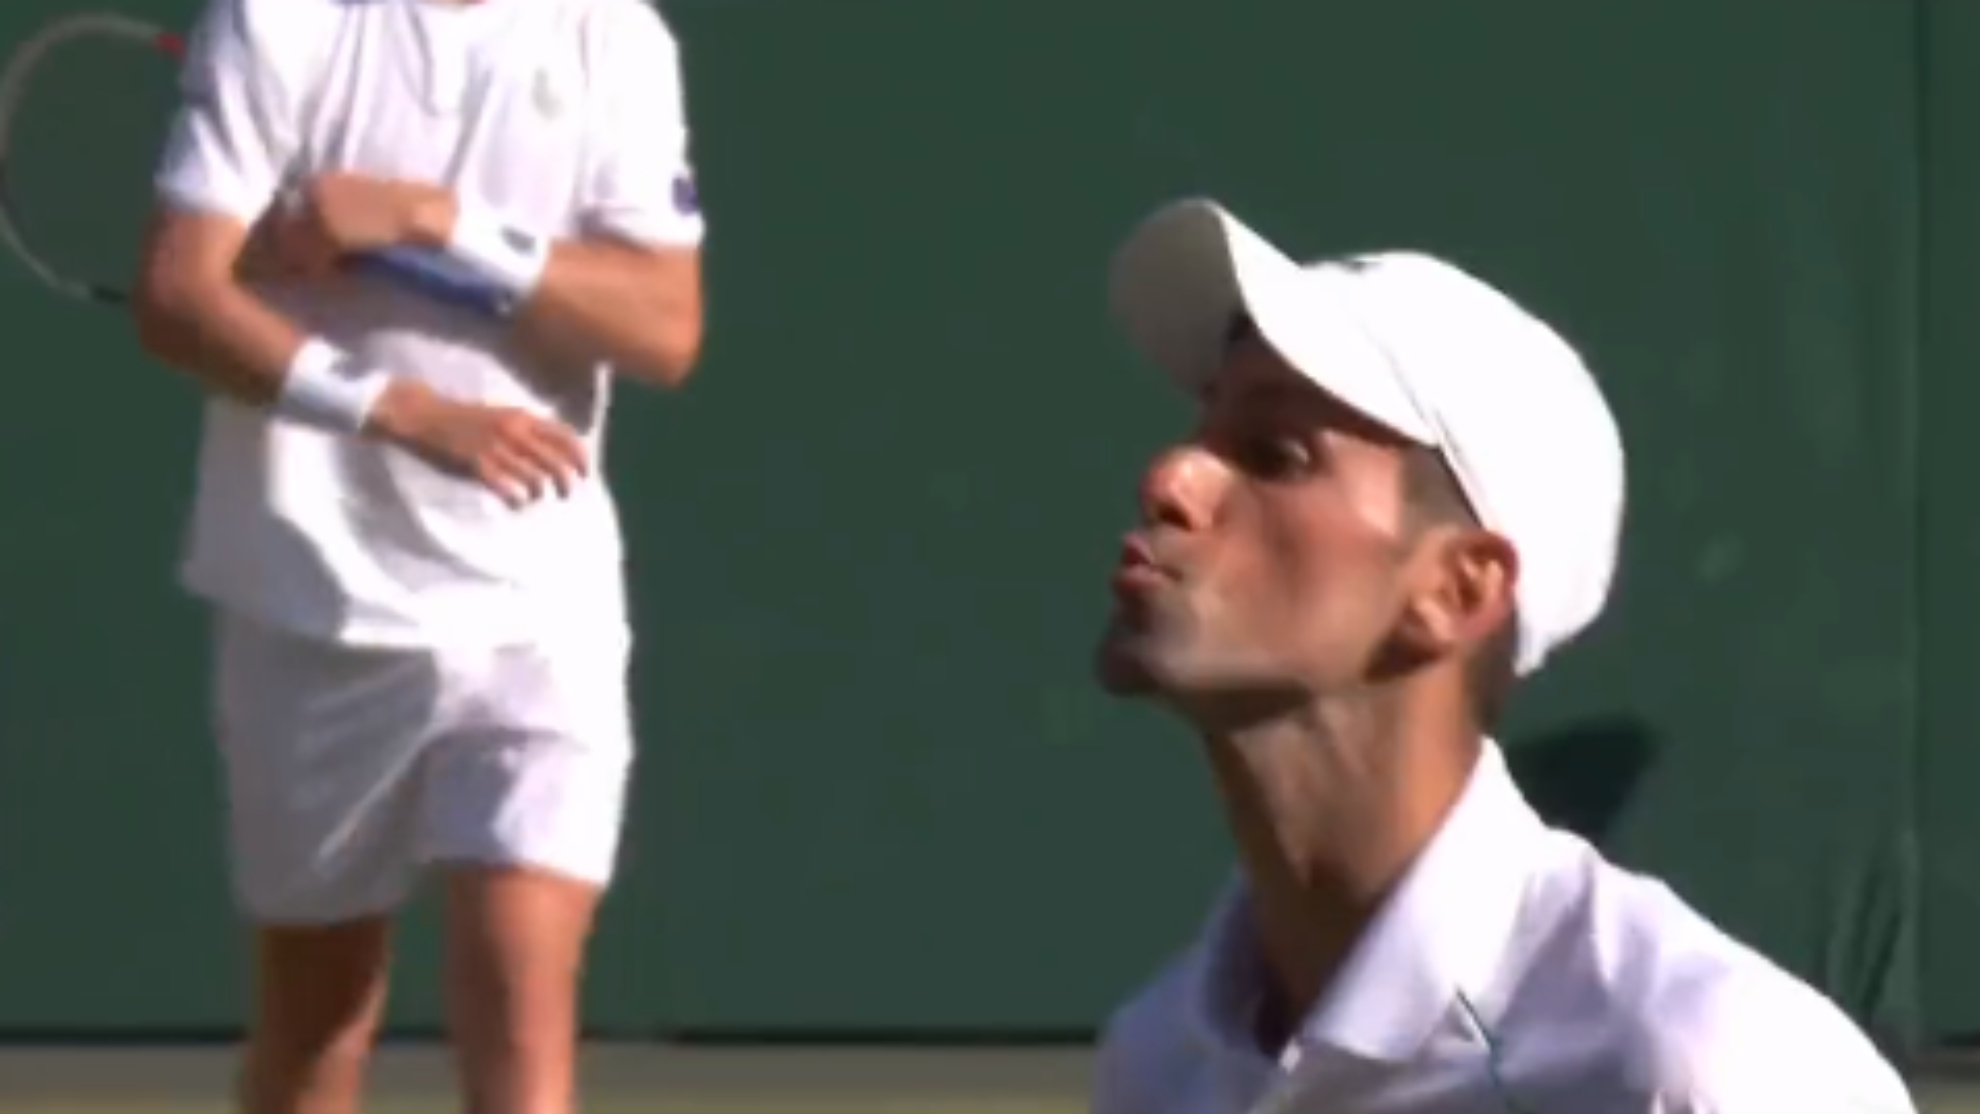 Se mete en la final y Djokovic hace estos polémicos gestos: ¿besitos para los que le abuchearon?